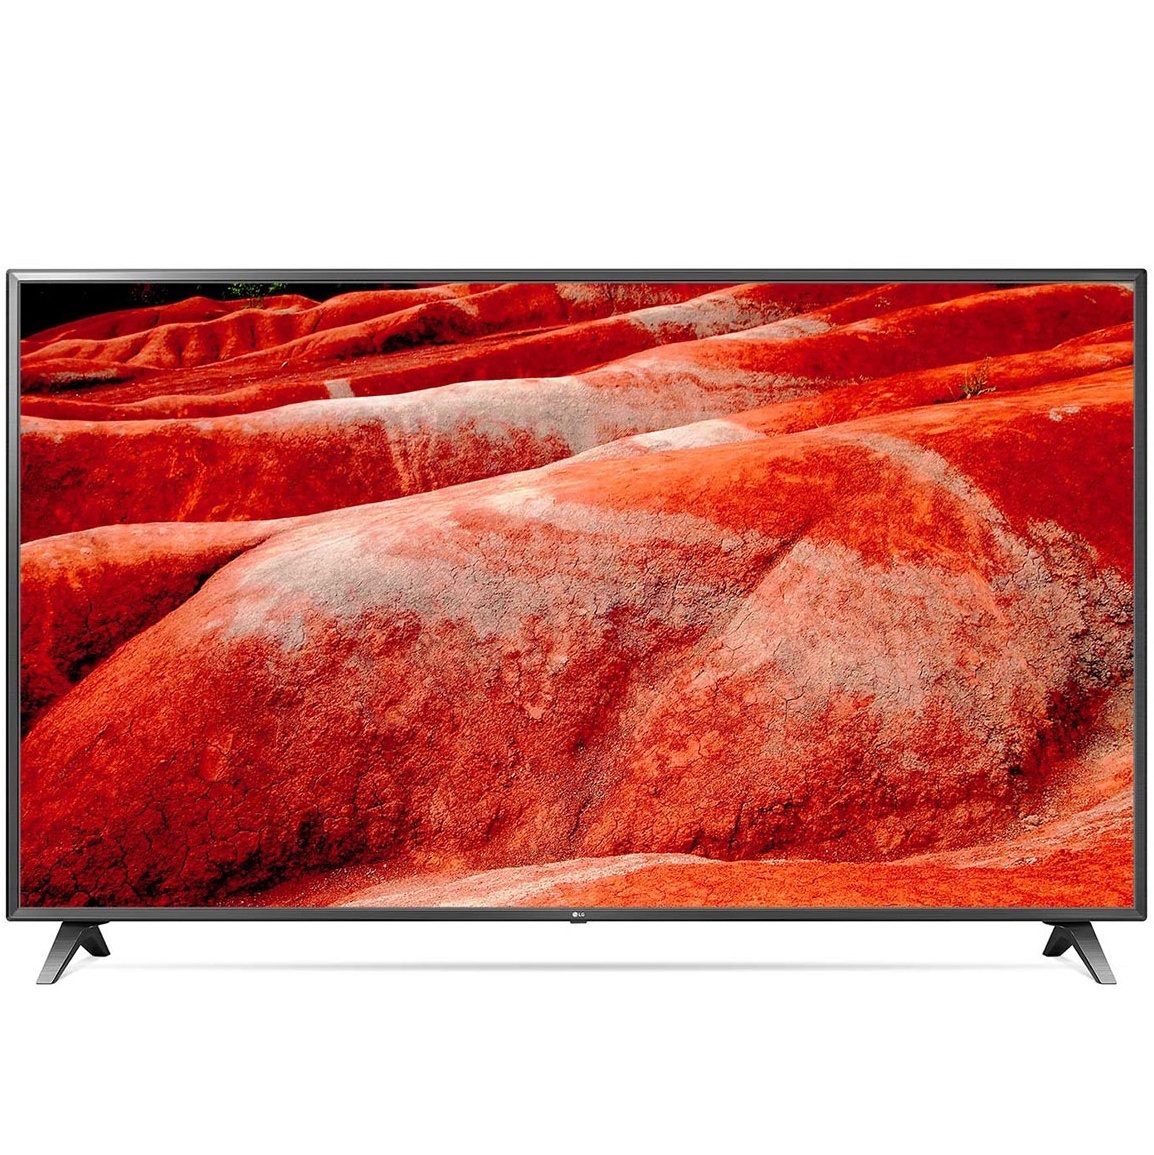 LG UHD TV 82 inch 4K Smart UHD TV HDR 82UM7500PTA chính hãng